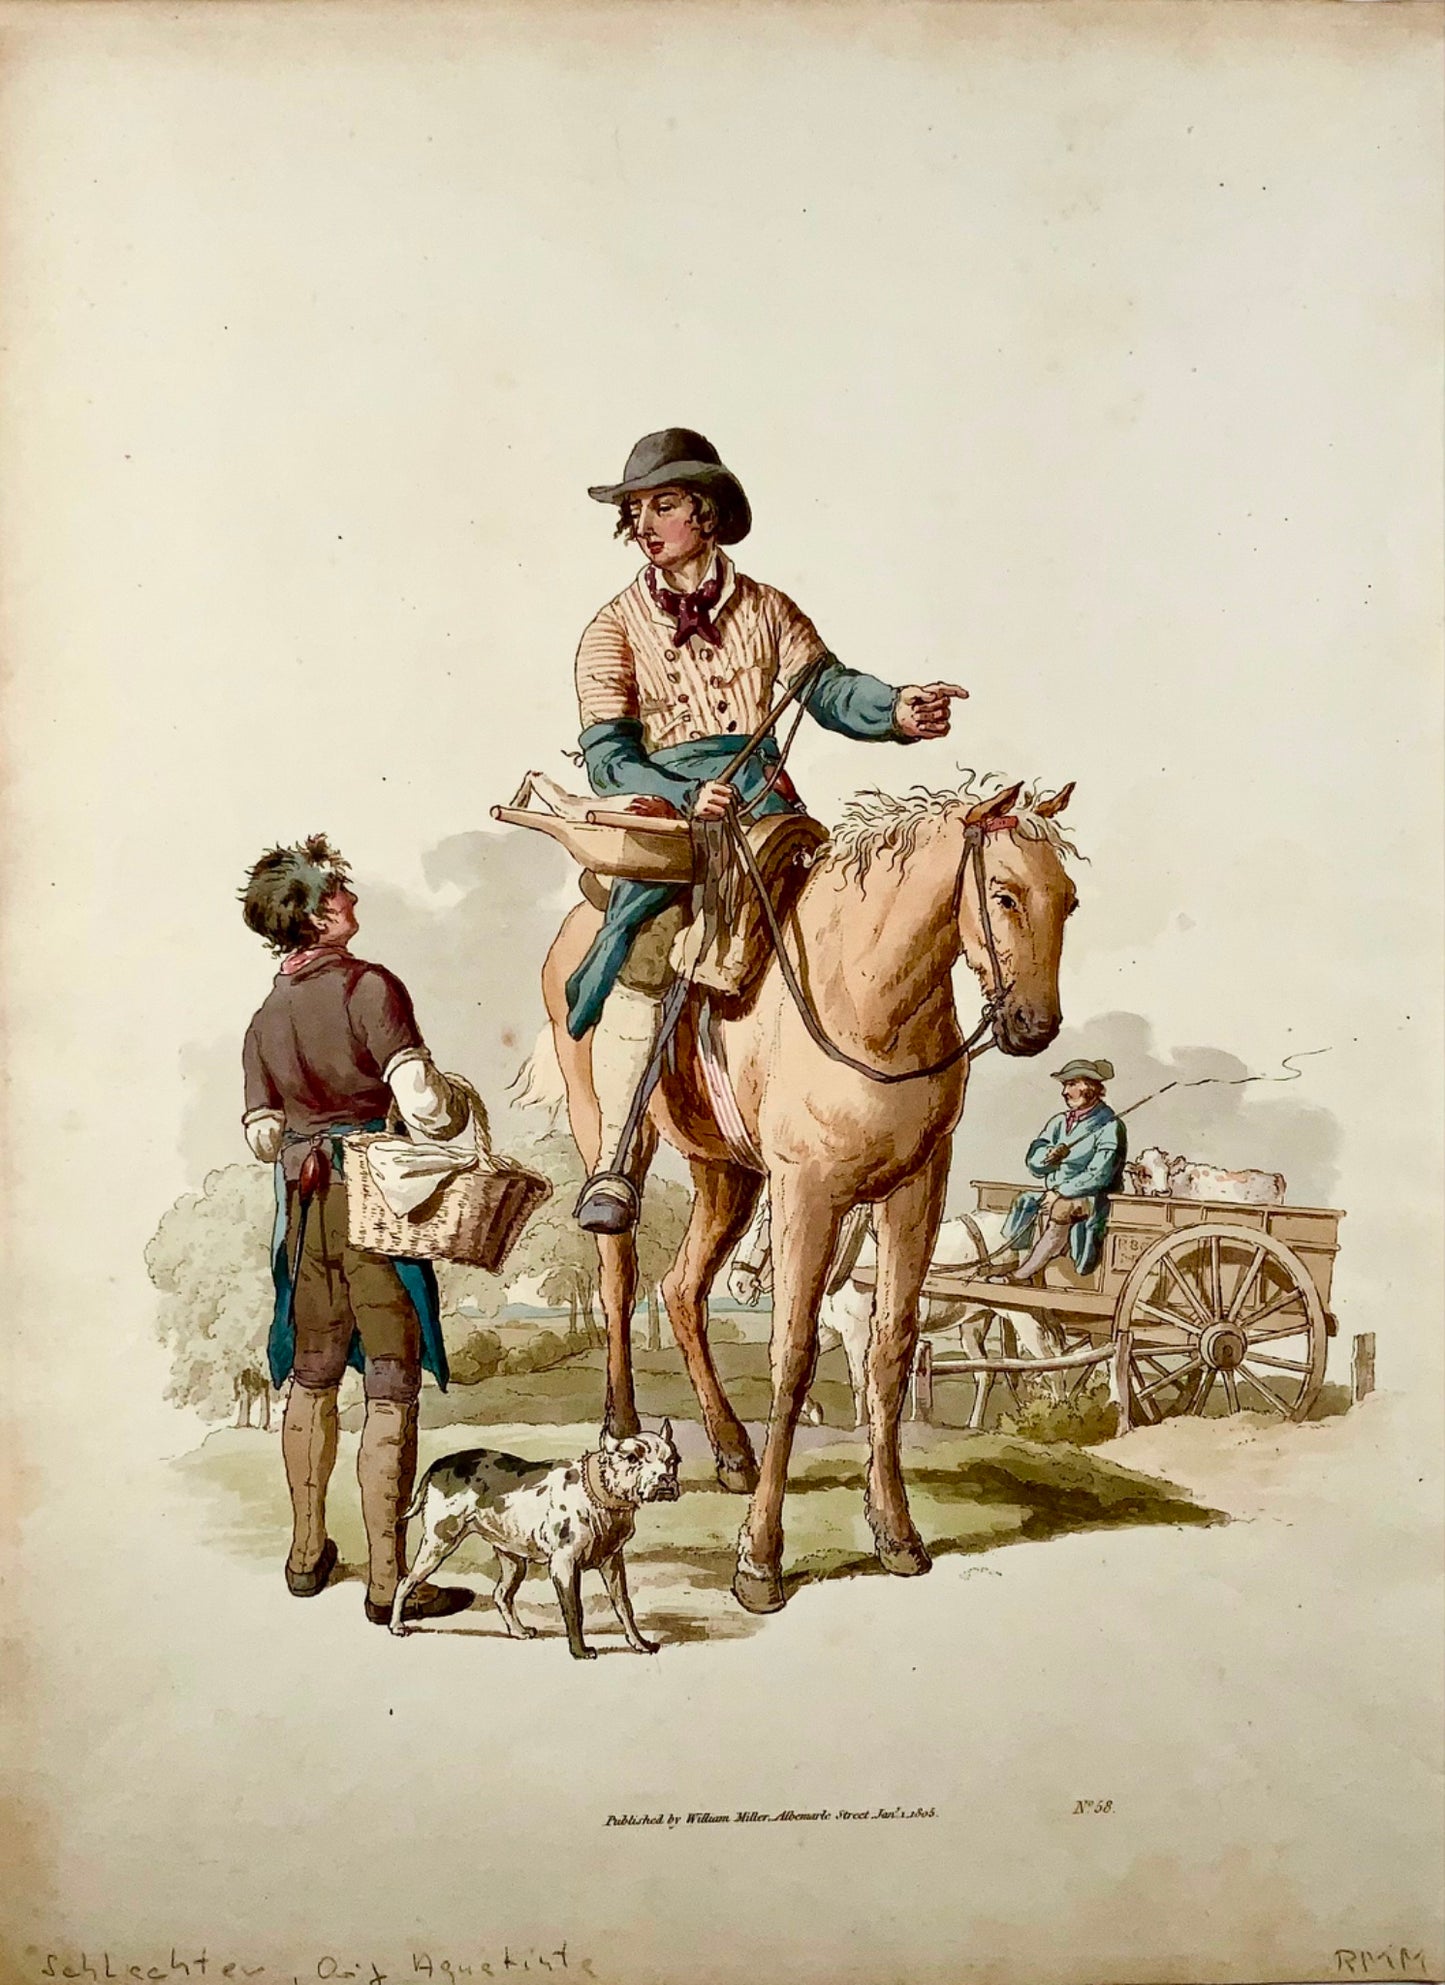 1805 Wm Pyne, The Butcher, commerci, acquatinta in folio con colori a mano